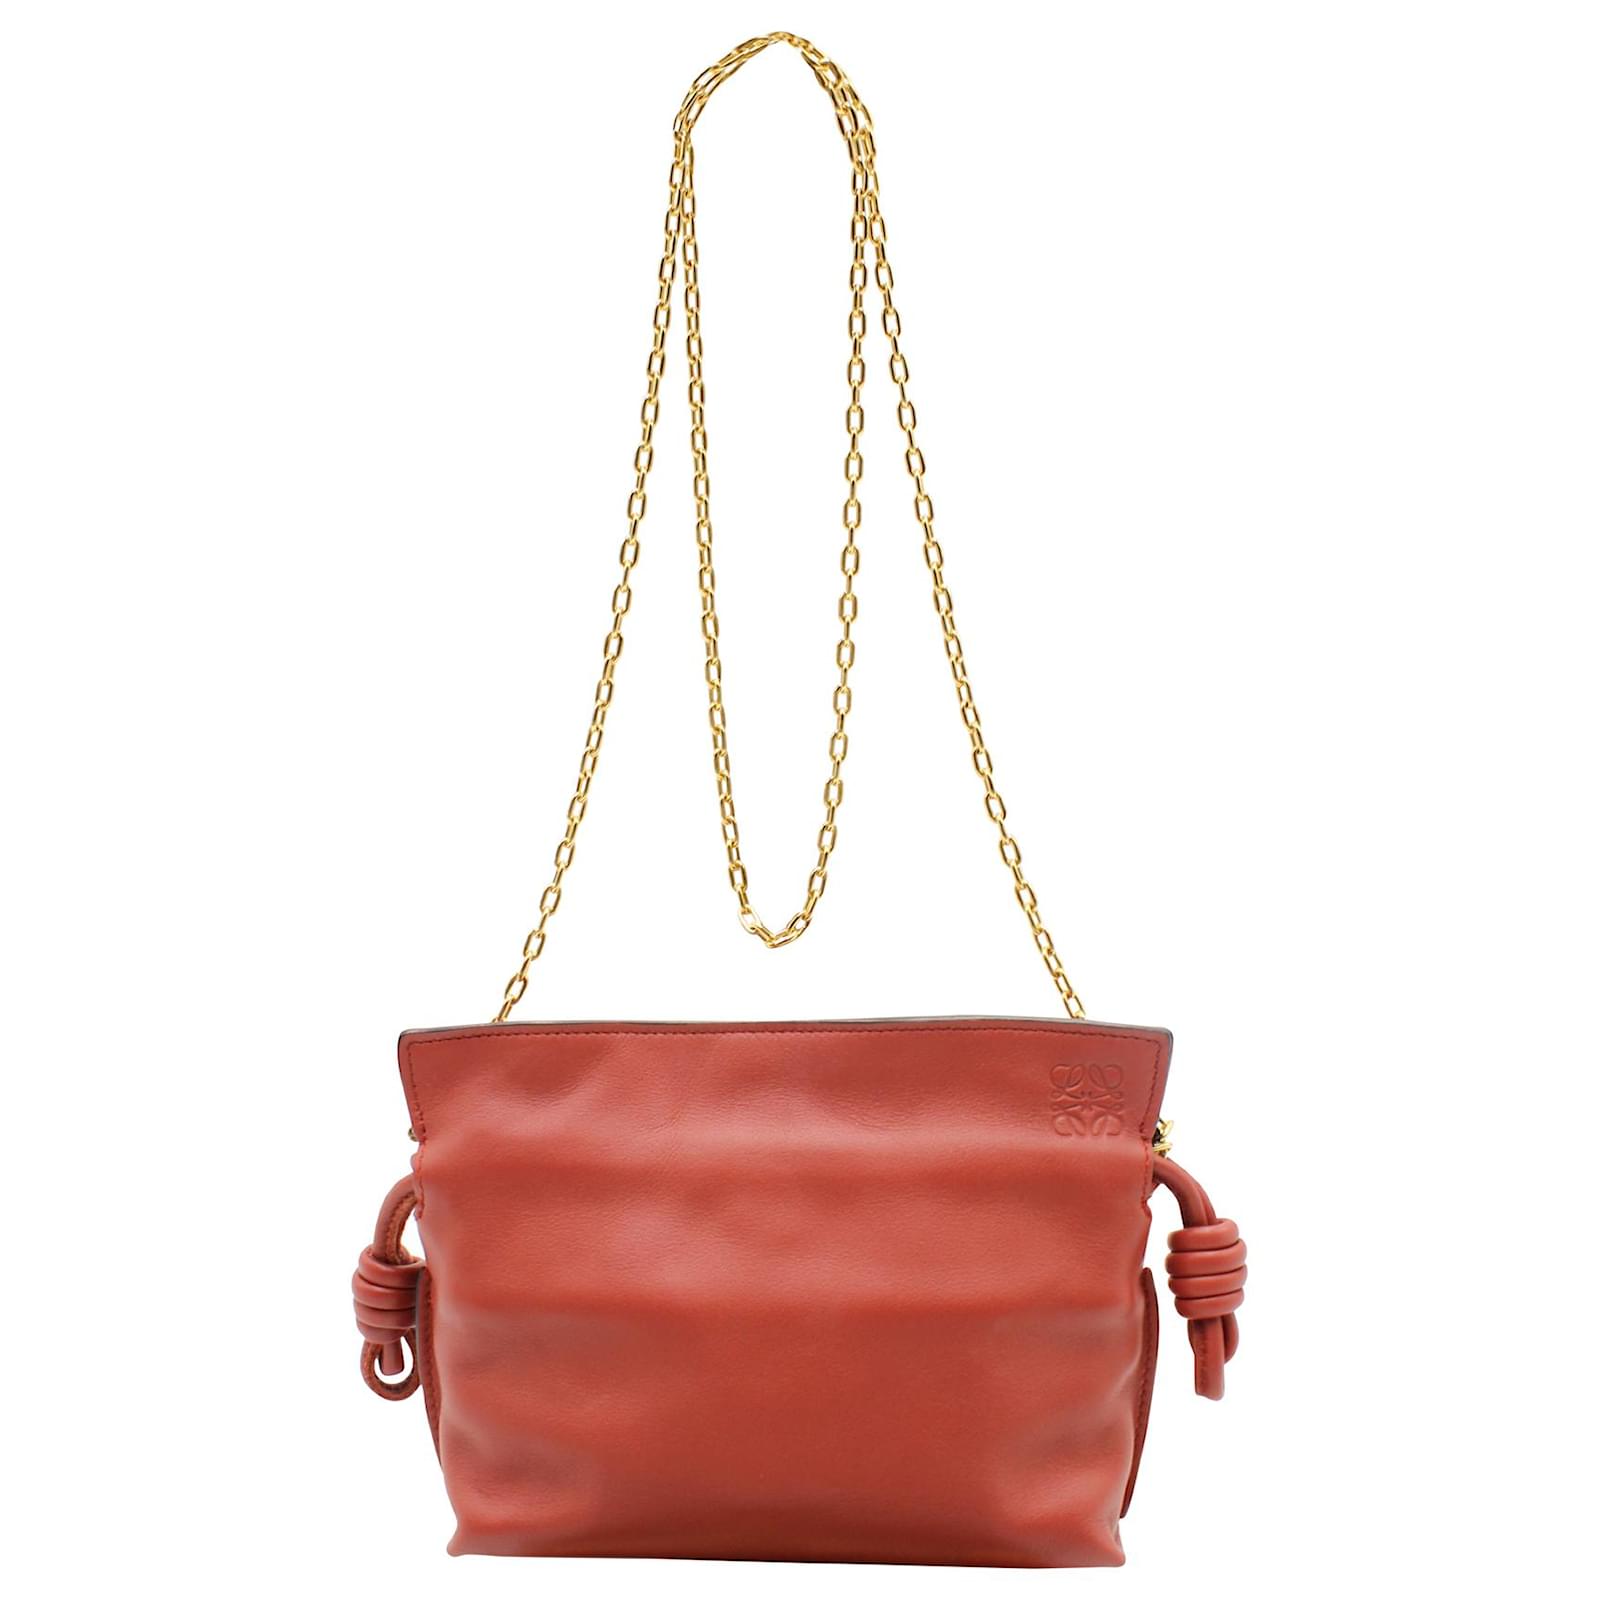 Loewe Flamenco Nano Clutch Bag in Red Calfskin Leather Pony-style